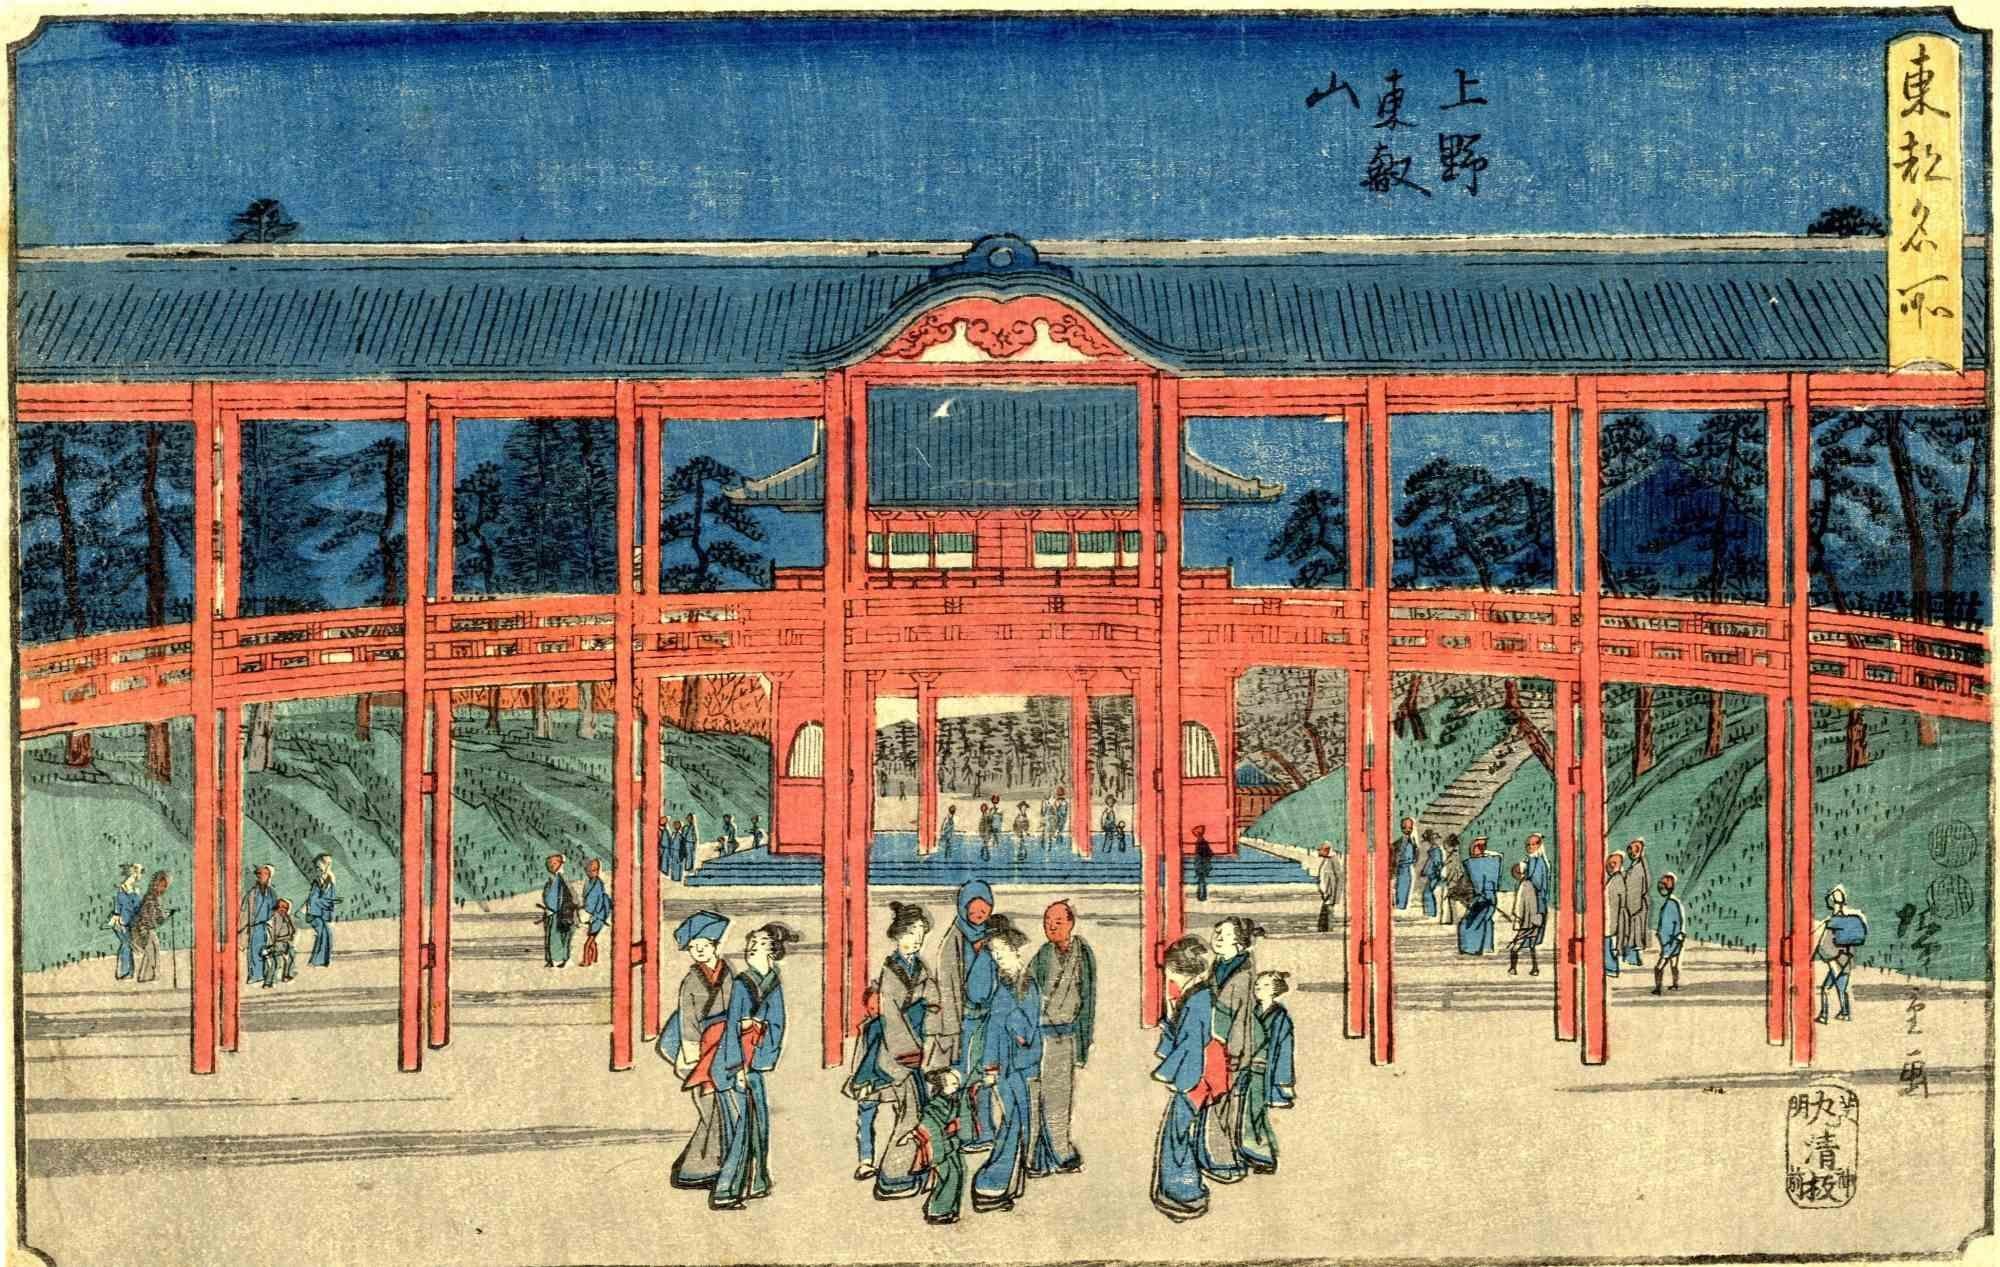 Toeizan Temple in Ueno - Woodcut by Utagawa Hiroshige - 1840s